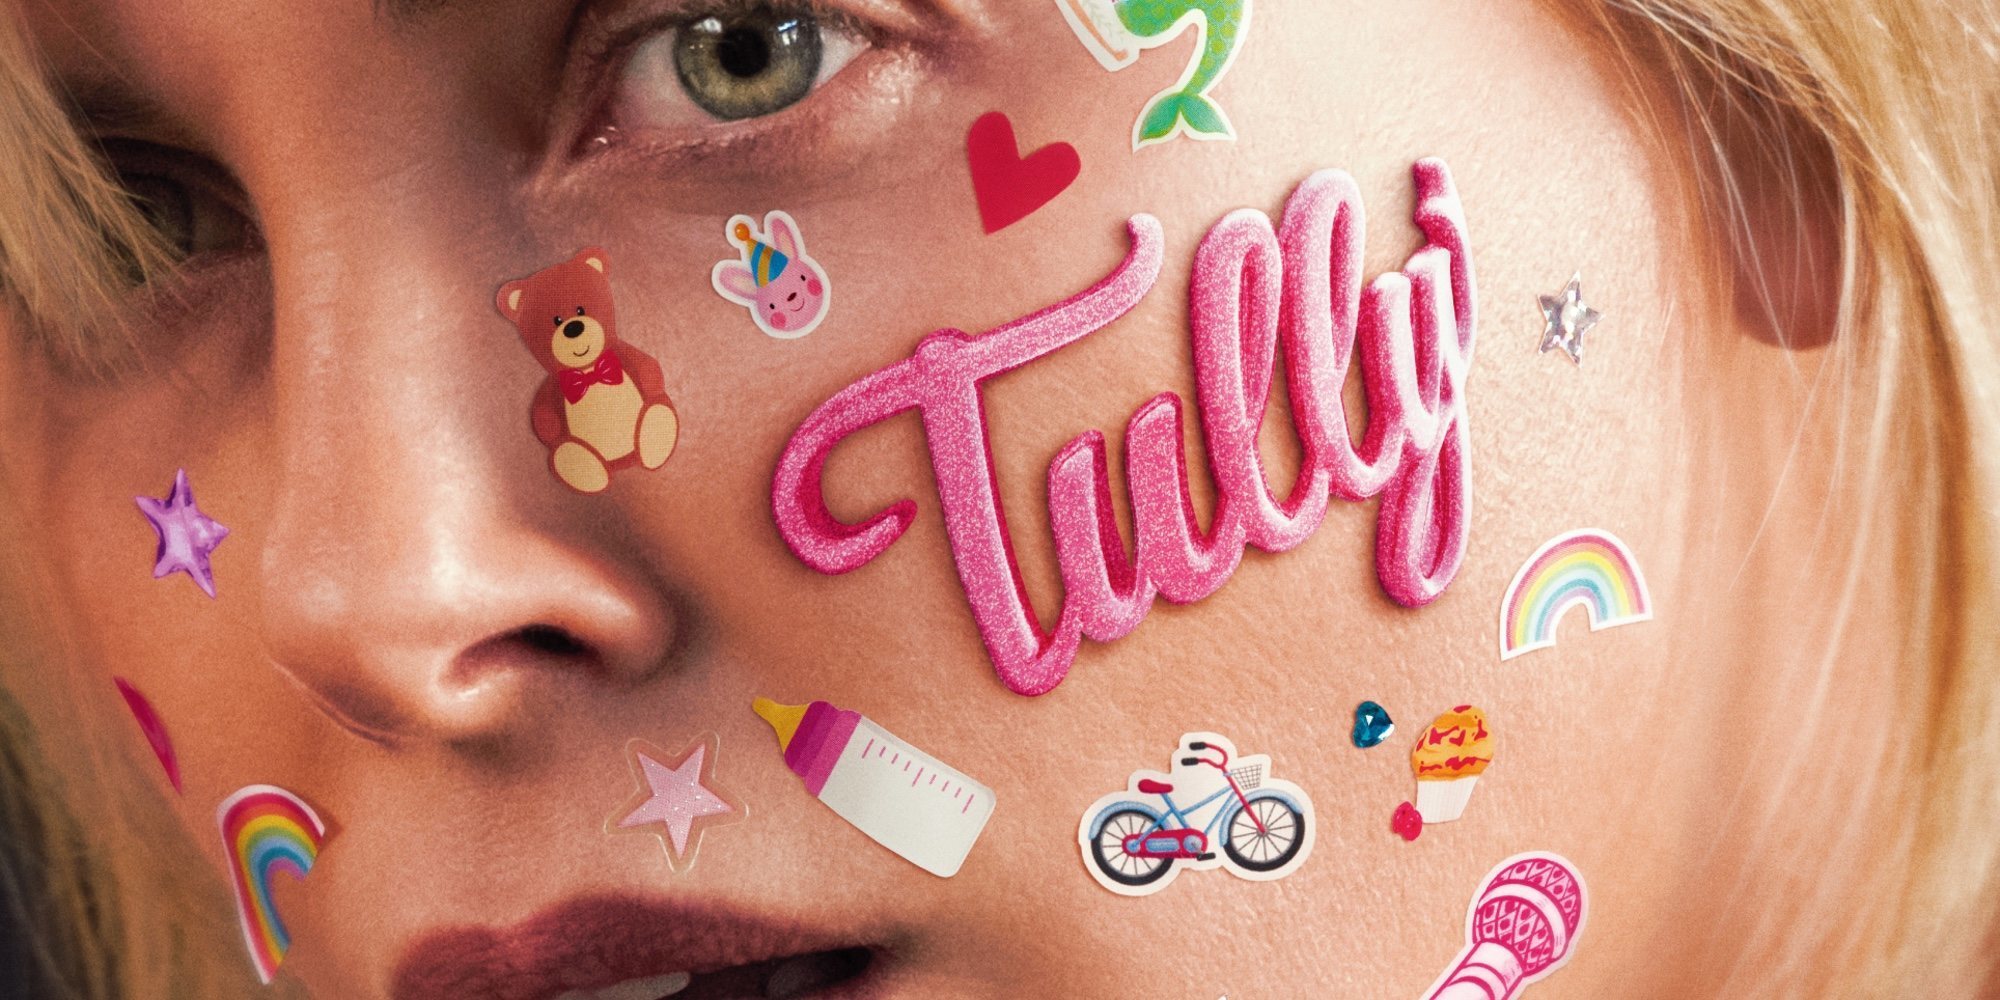 Clip exclusivo de 'Tully' con Charlize Theron: cómo una niñera cambió la vida a una madre de familia numerosa